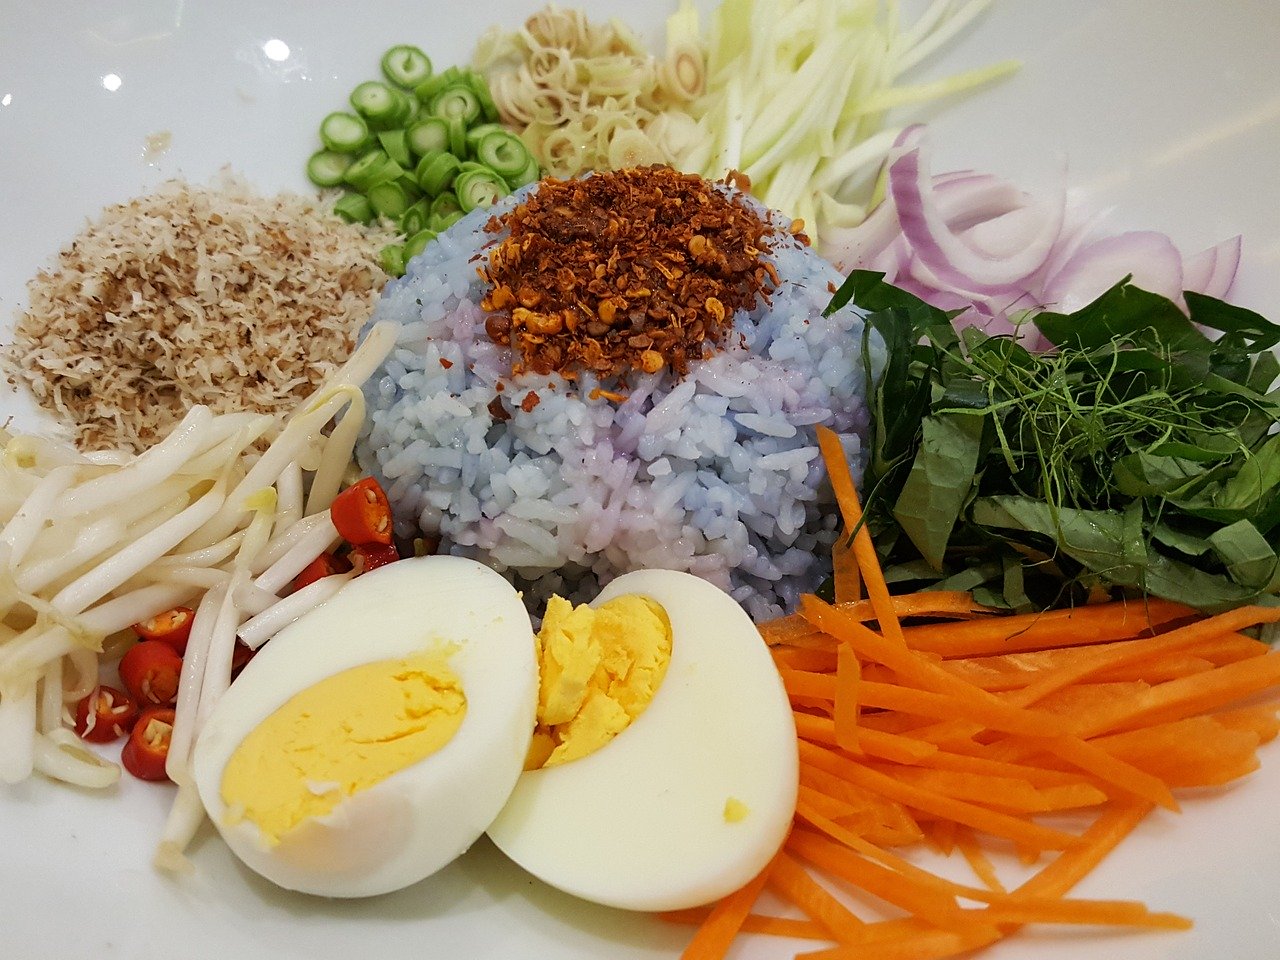 Ingredients for making Pad Thai recipe